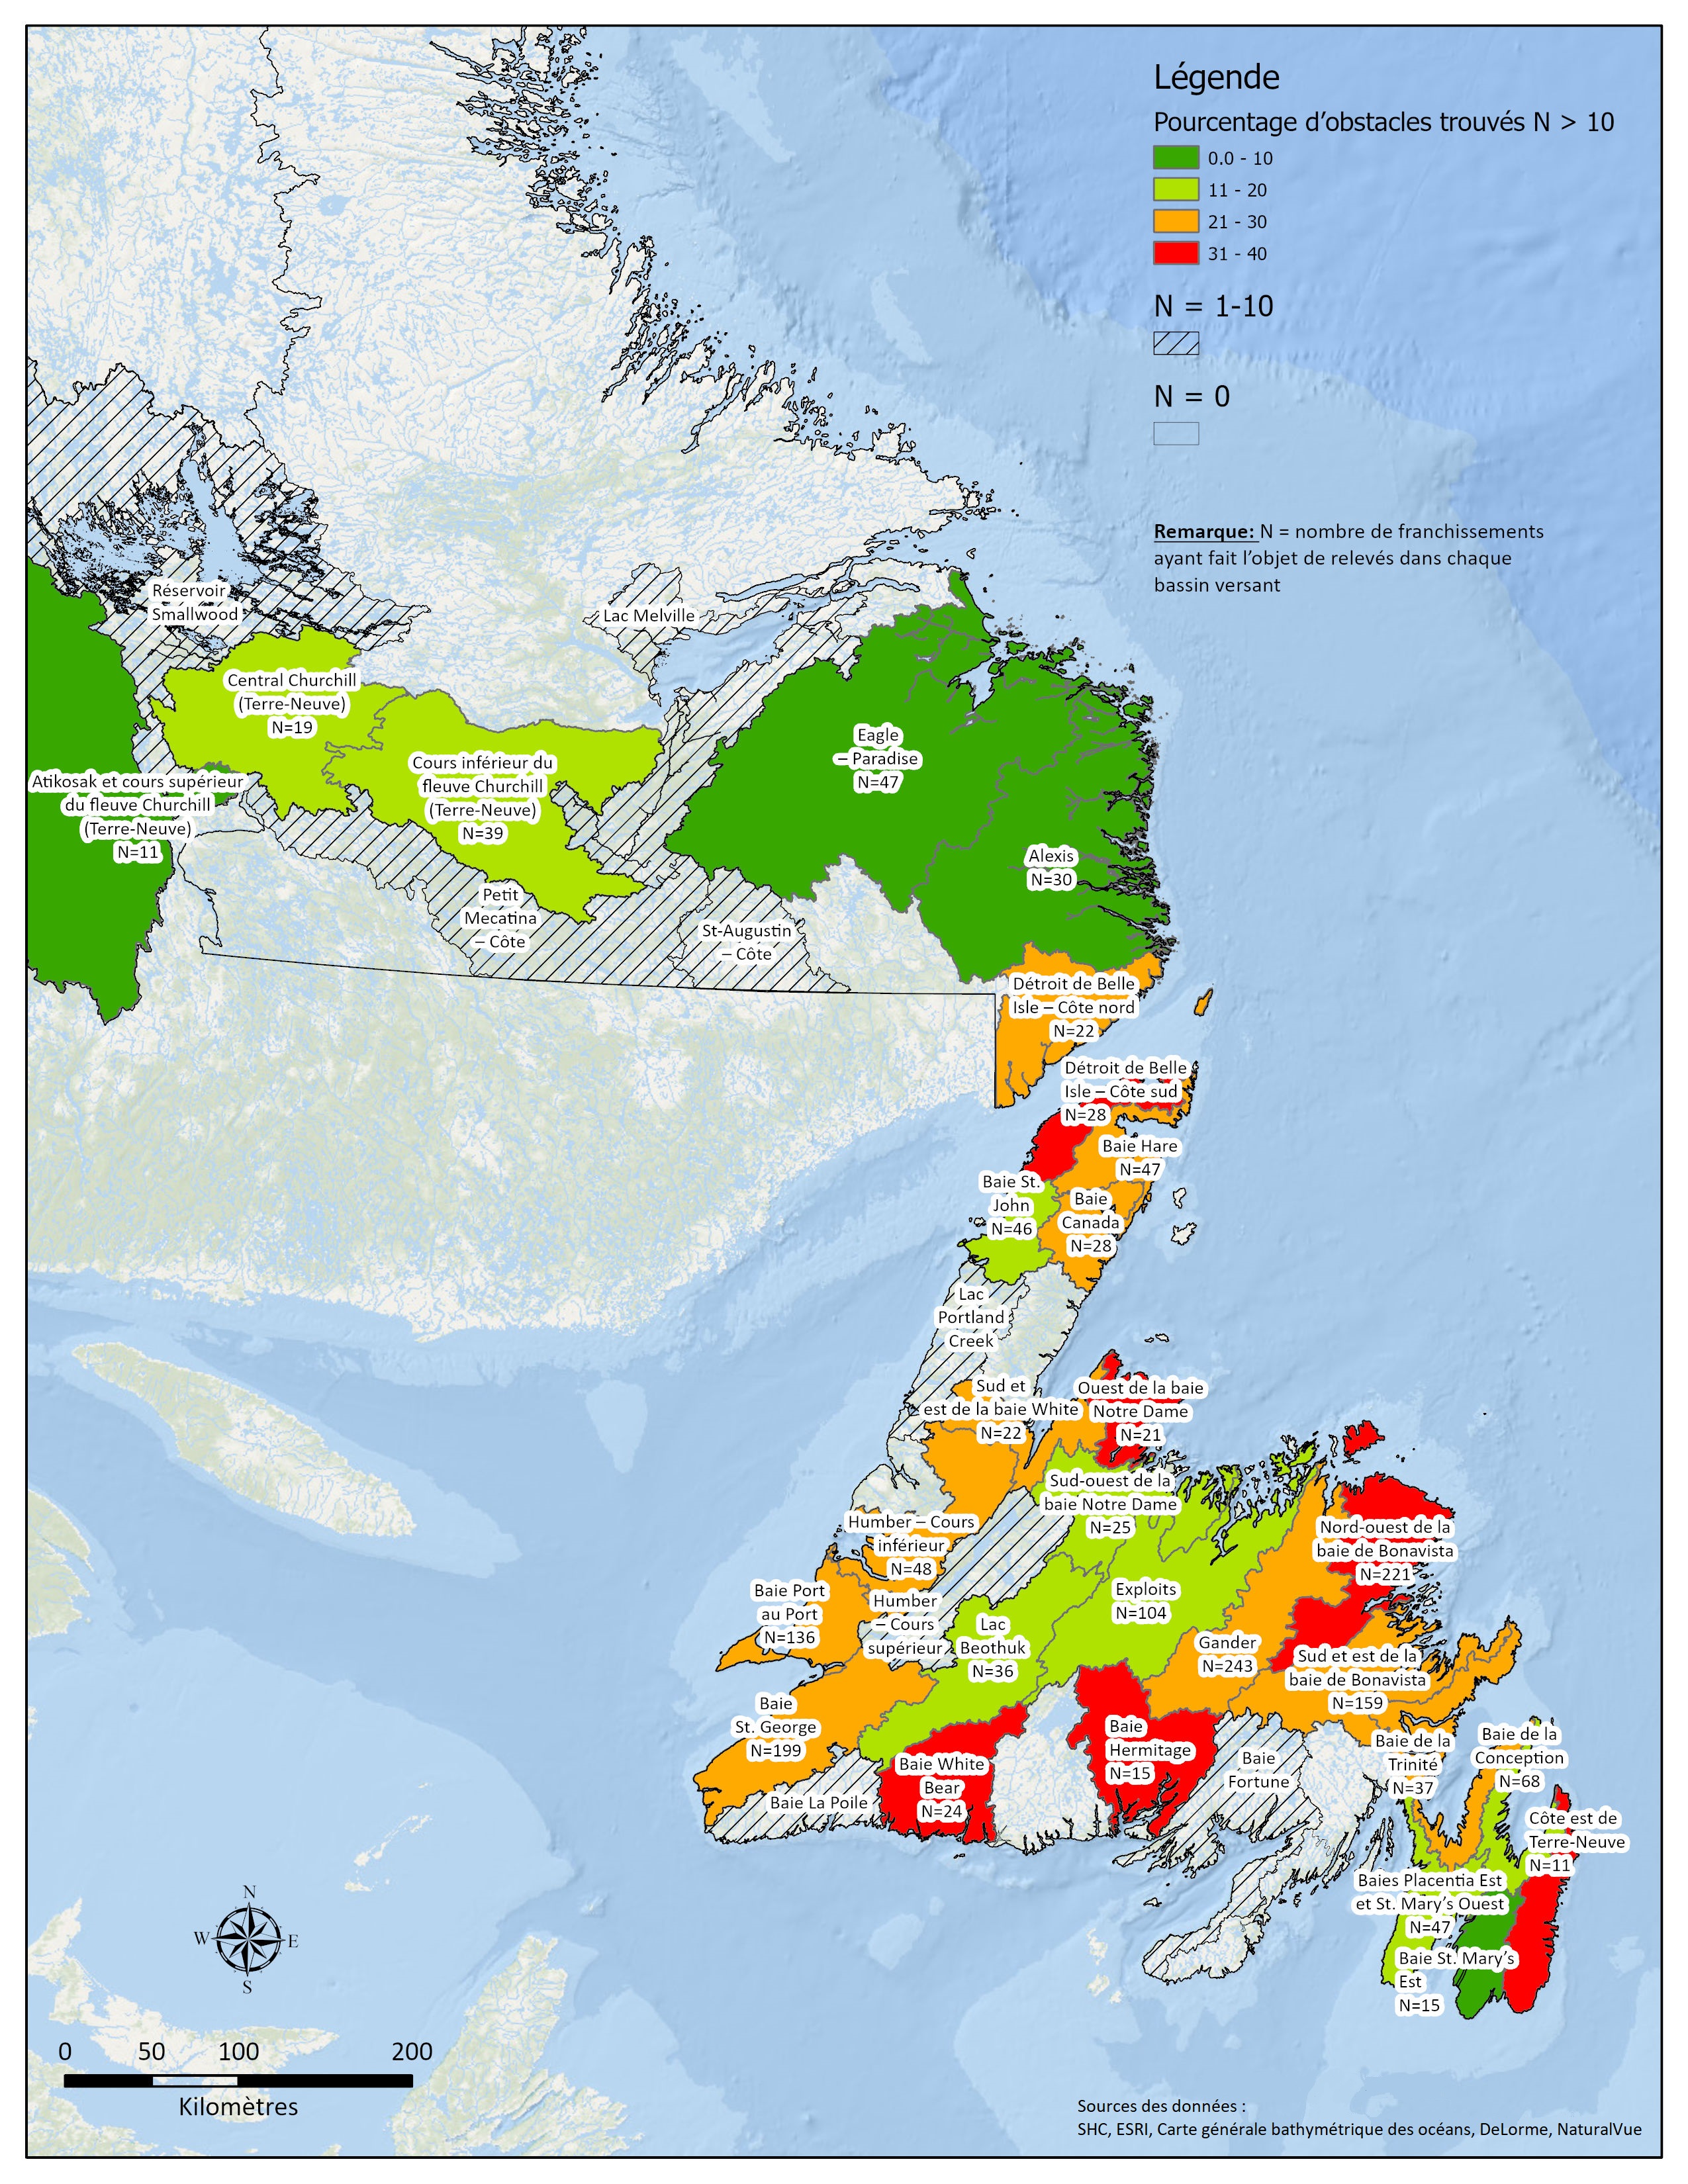 Évaluation des obstacles visant les franchissements pour l'île de Terre-Neuve (par exemple, pourcentage d'obstacles et nombre de relevés), par bassin hydrographique du réseau hydrographique national.